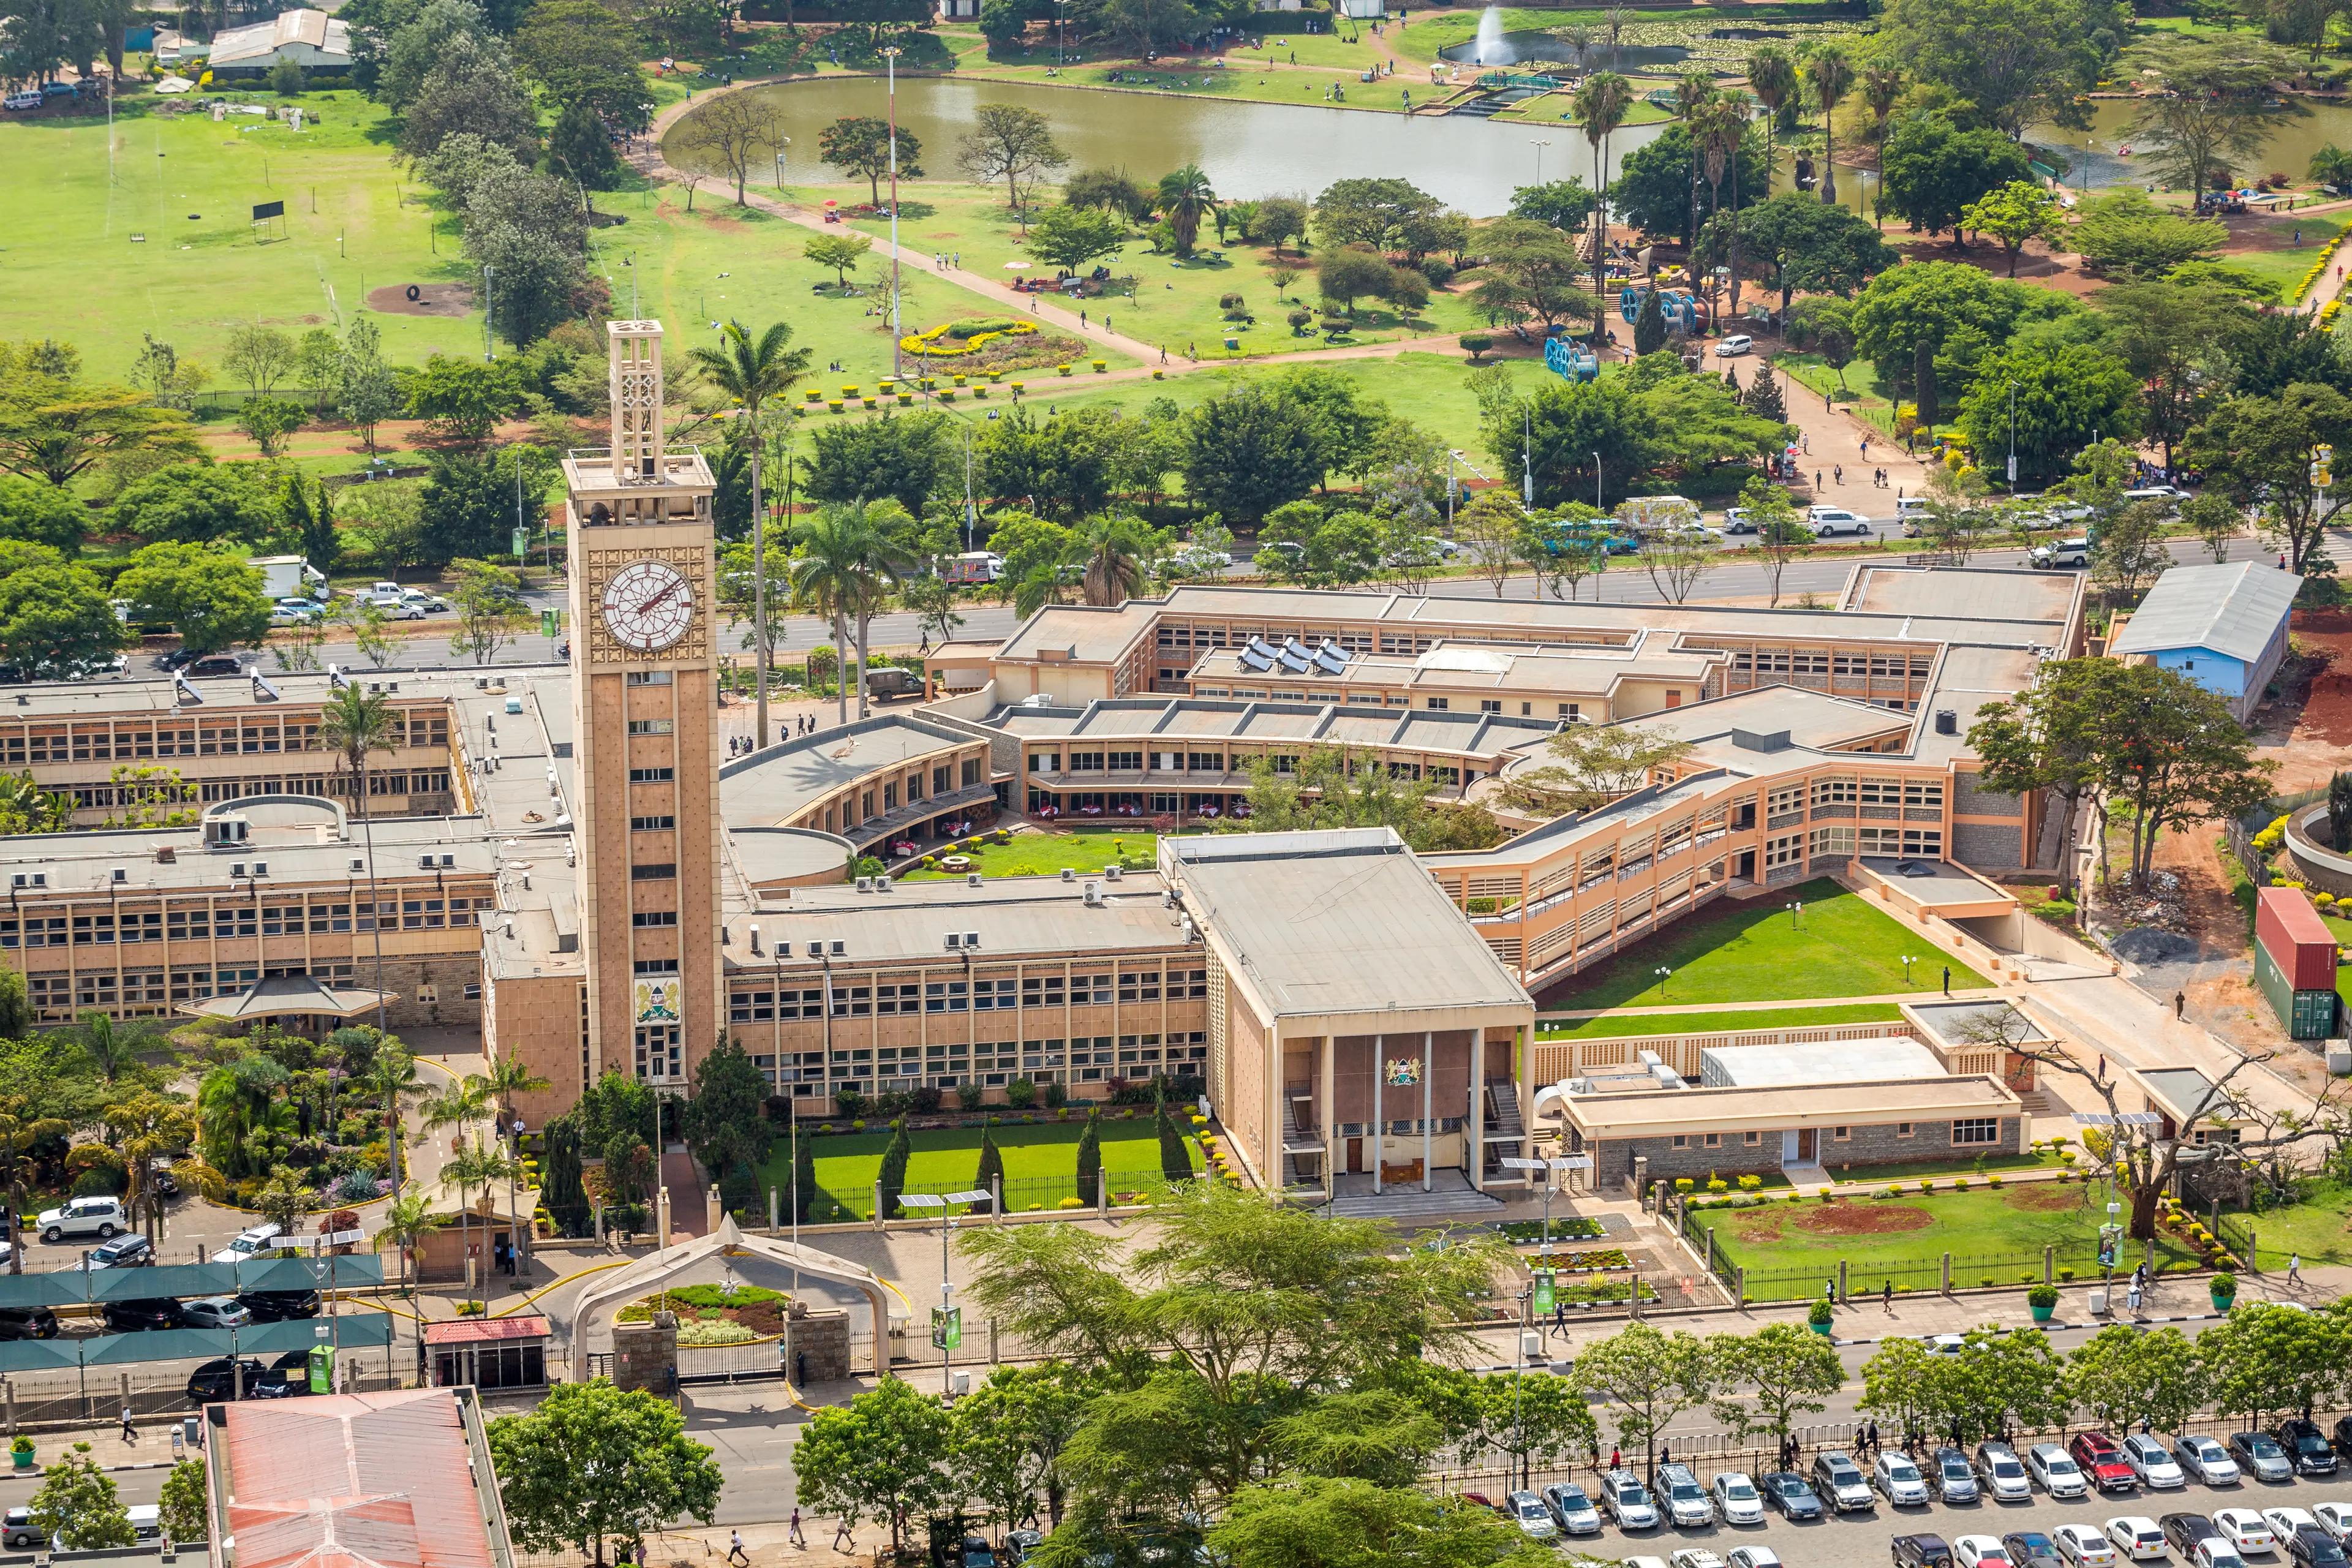 Kenya Parliament complex